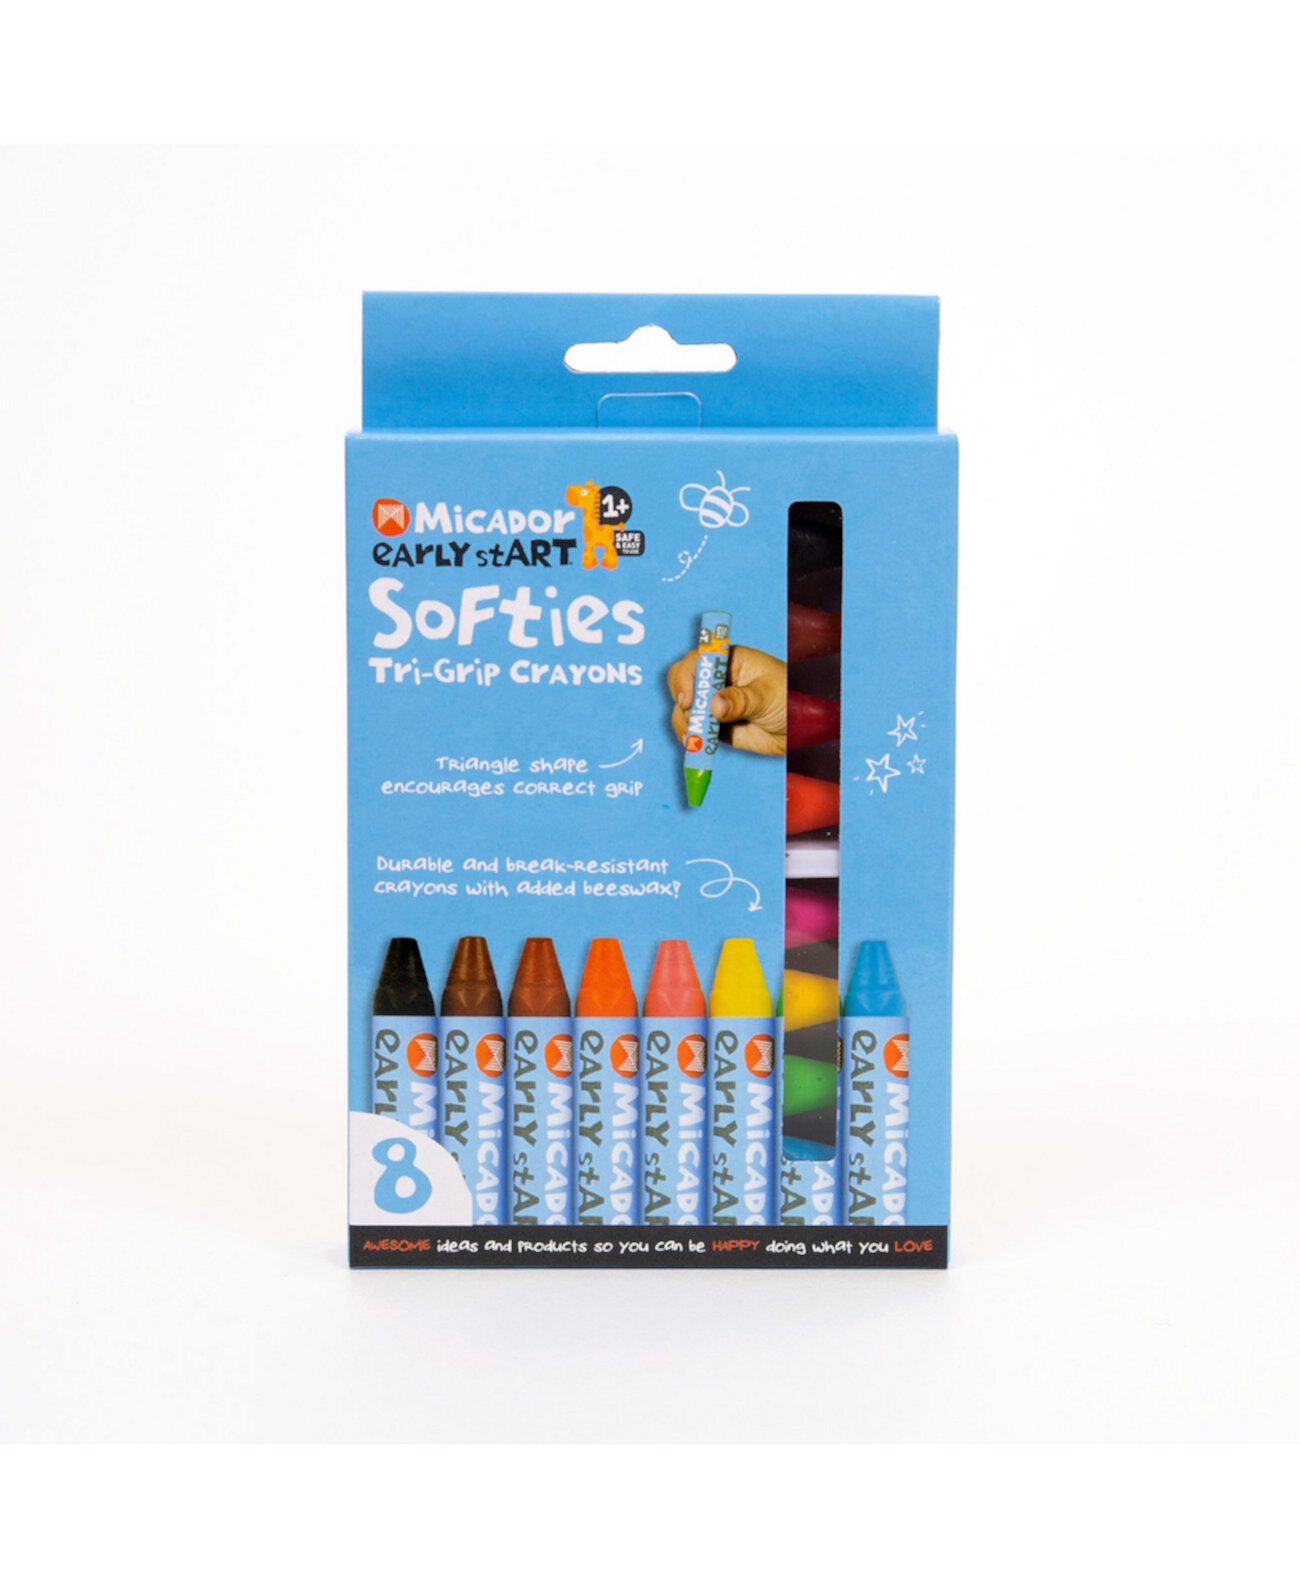 Набор цветных карандашей Softitri Grip, 8 шт. Micador early stART